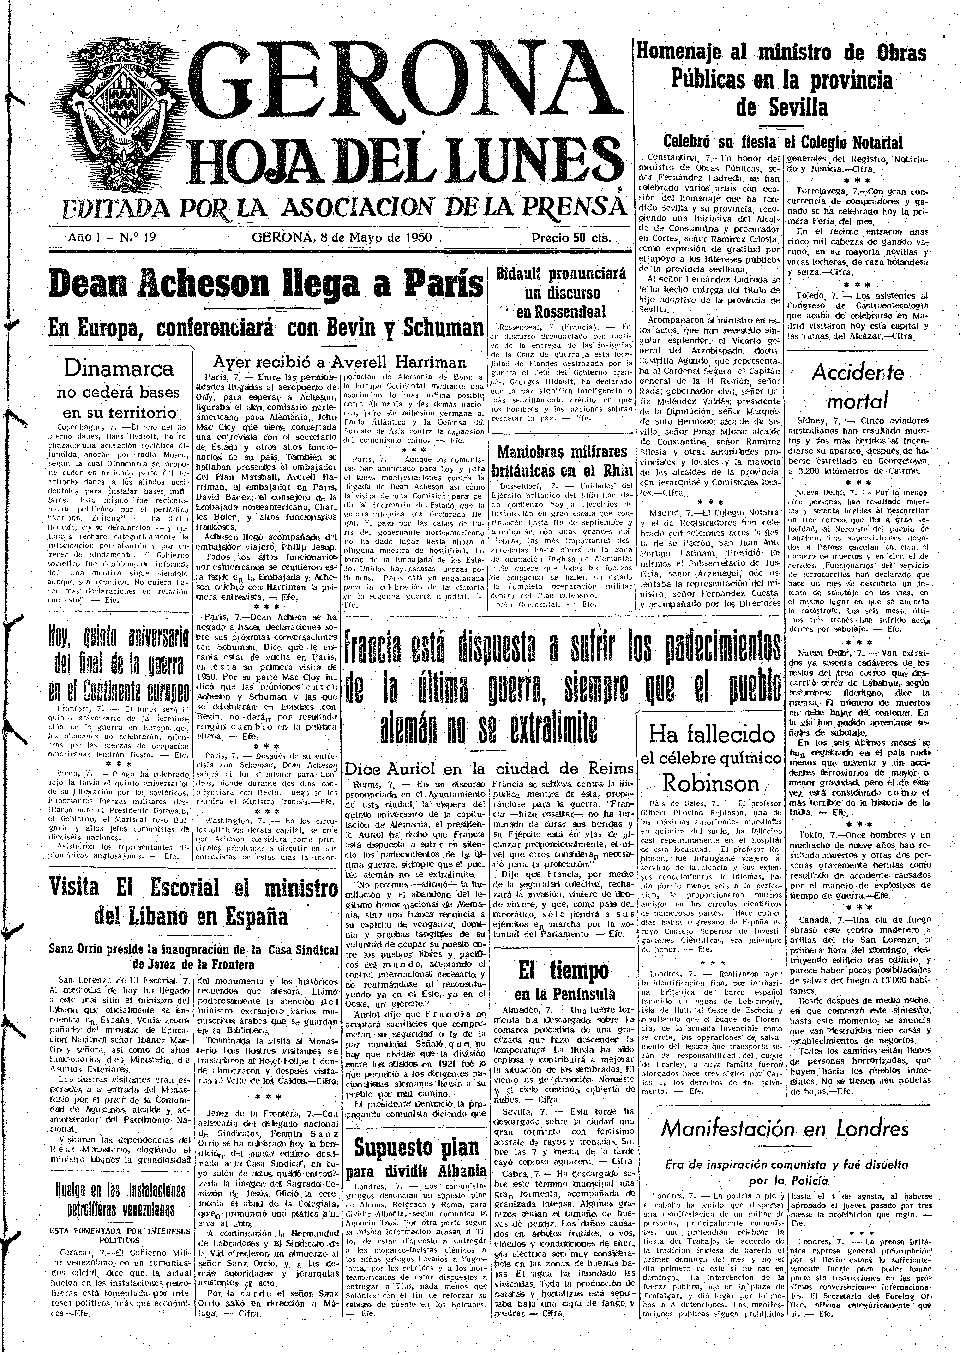 Hoja del Lunes. 8/5/1950. [Exemplar]